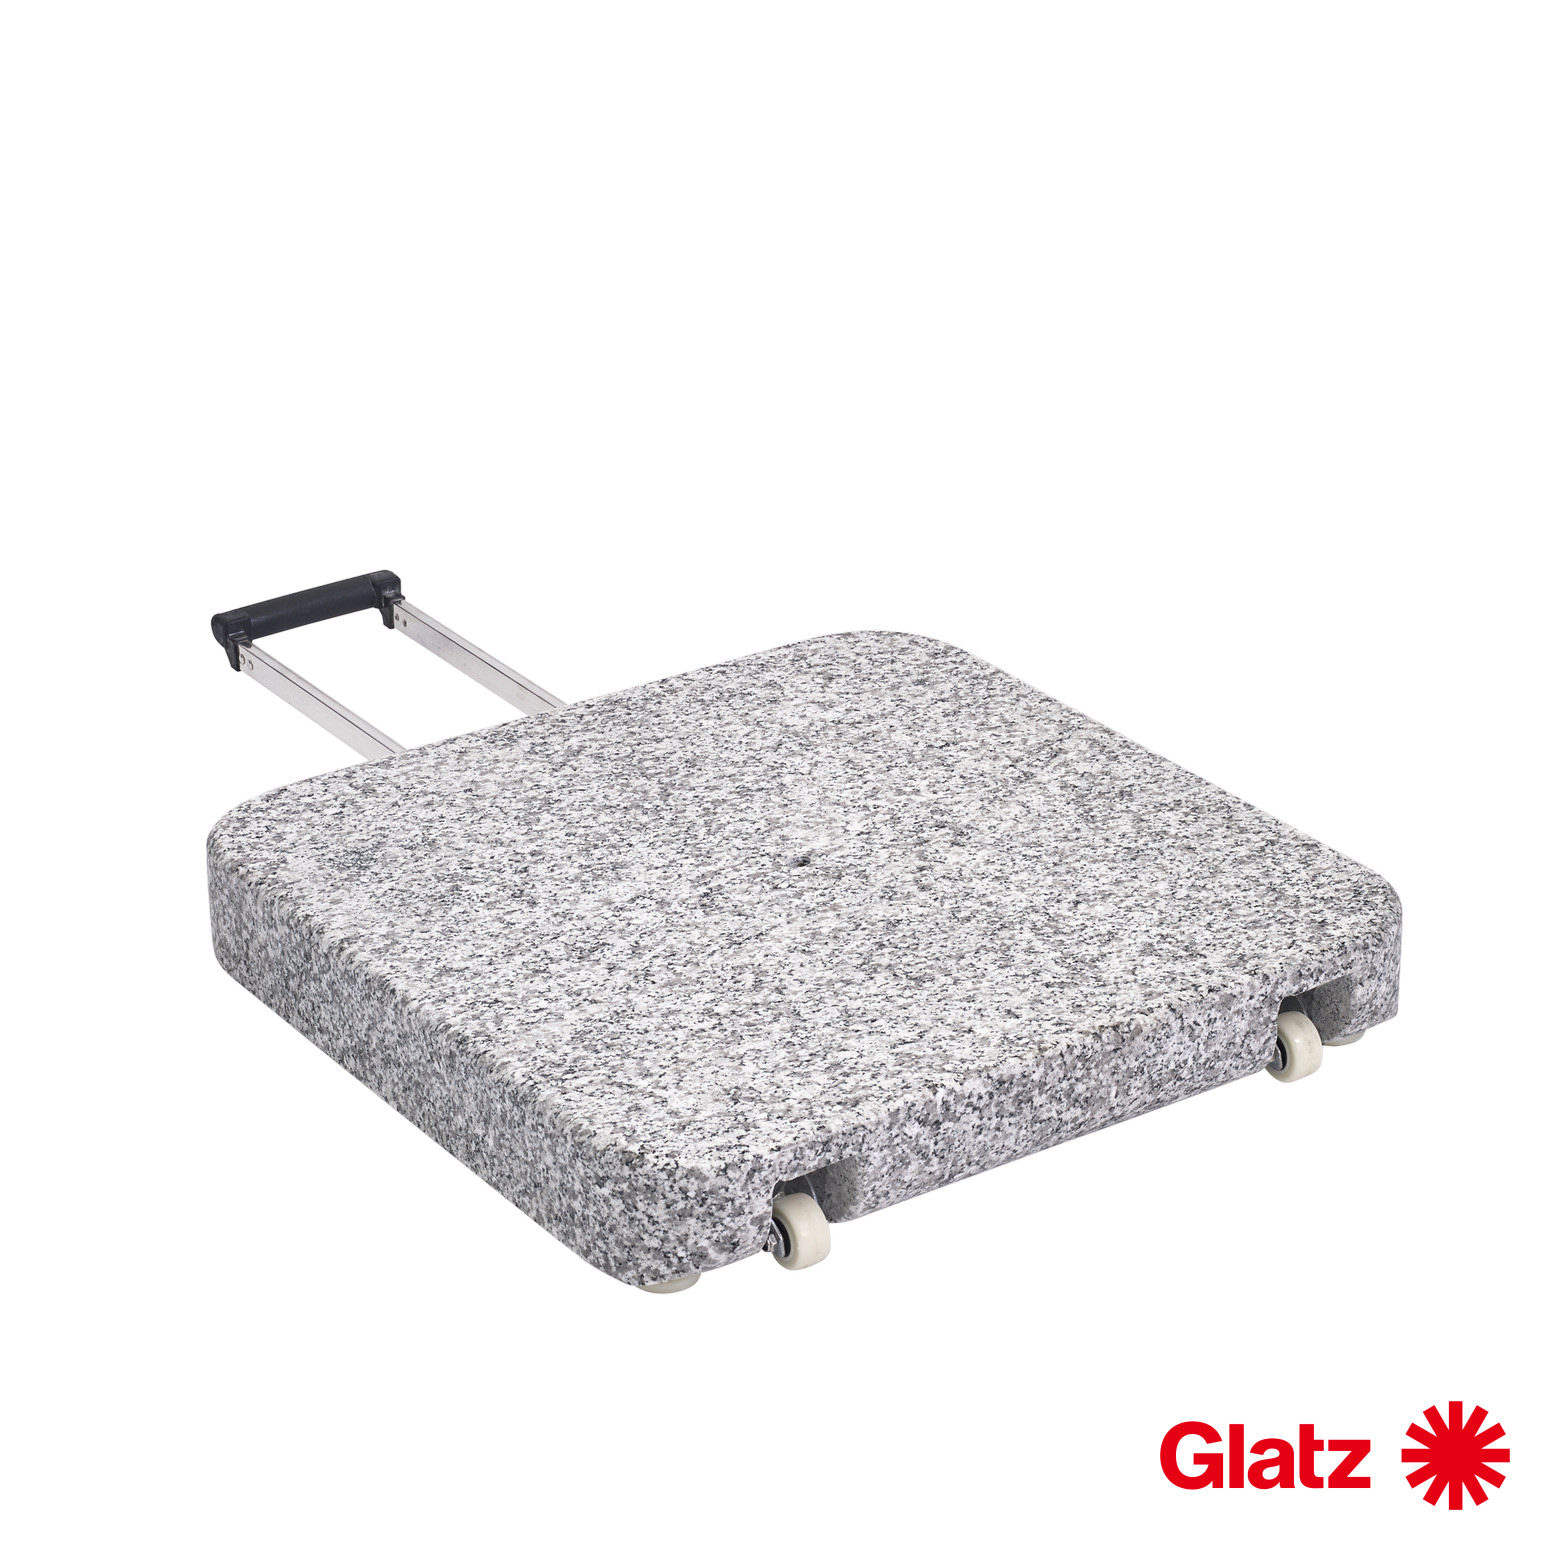 Glatz Granitsockel Z, 55 kg, 55x55x9 cm, Naturstein, mit Rollen und ausziehbarem Handgriff